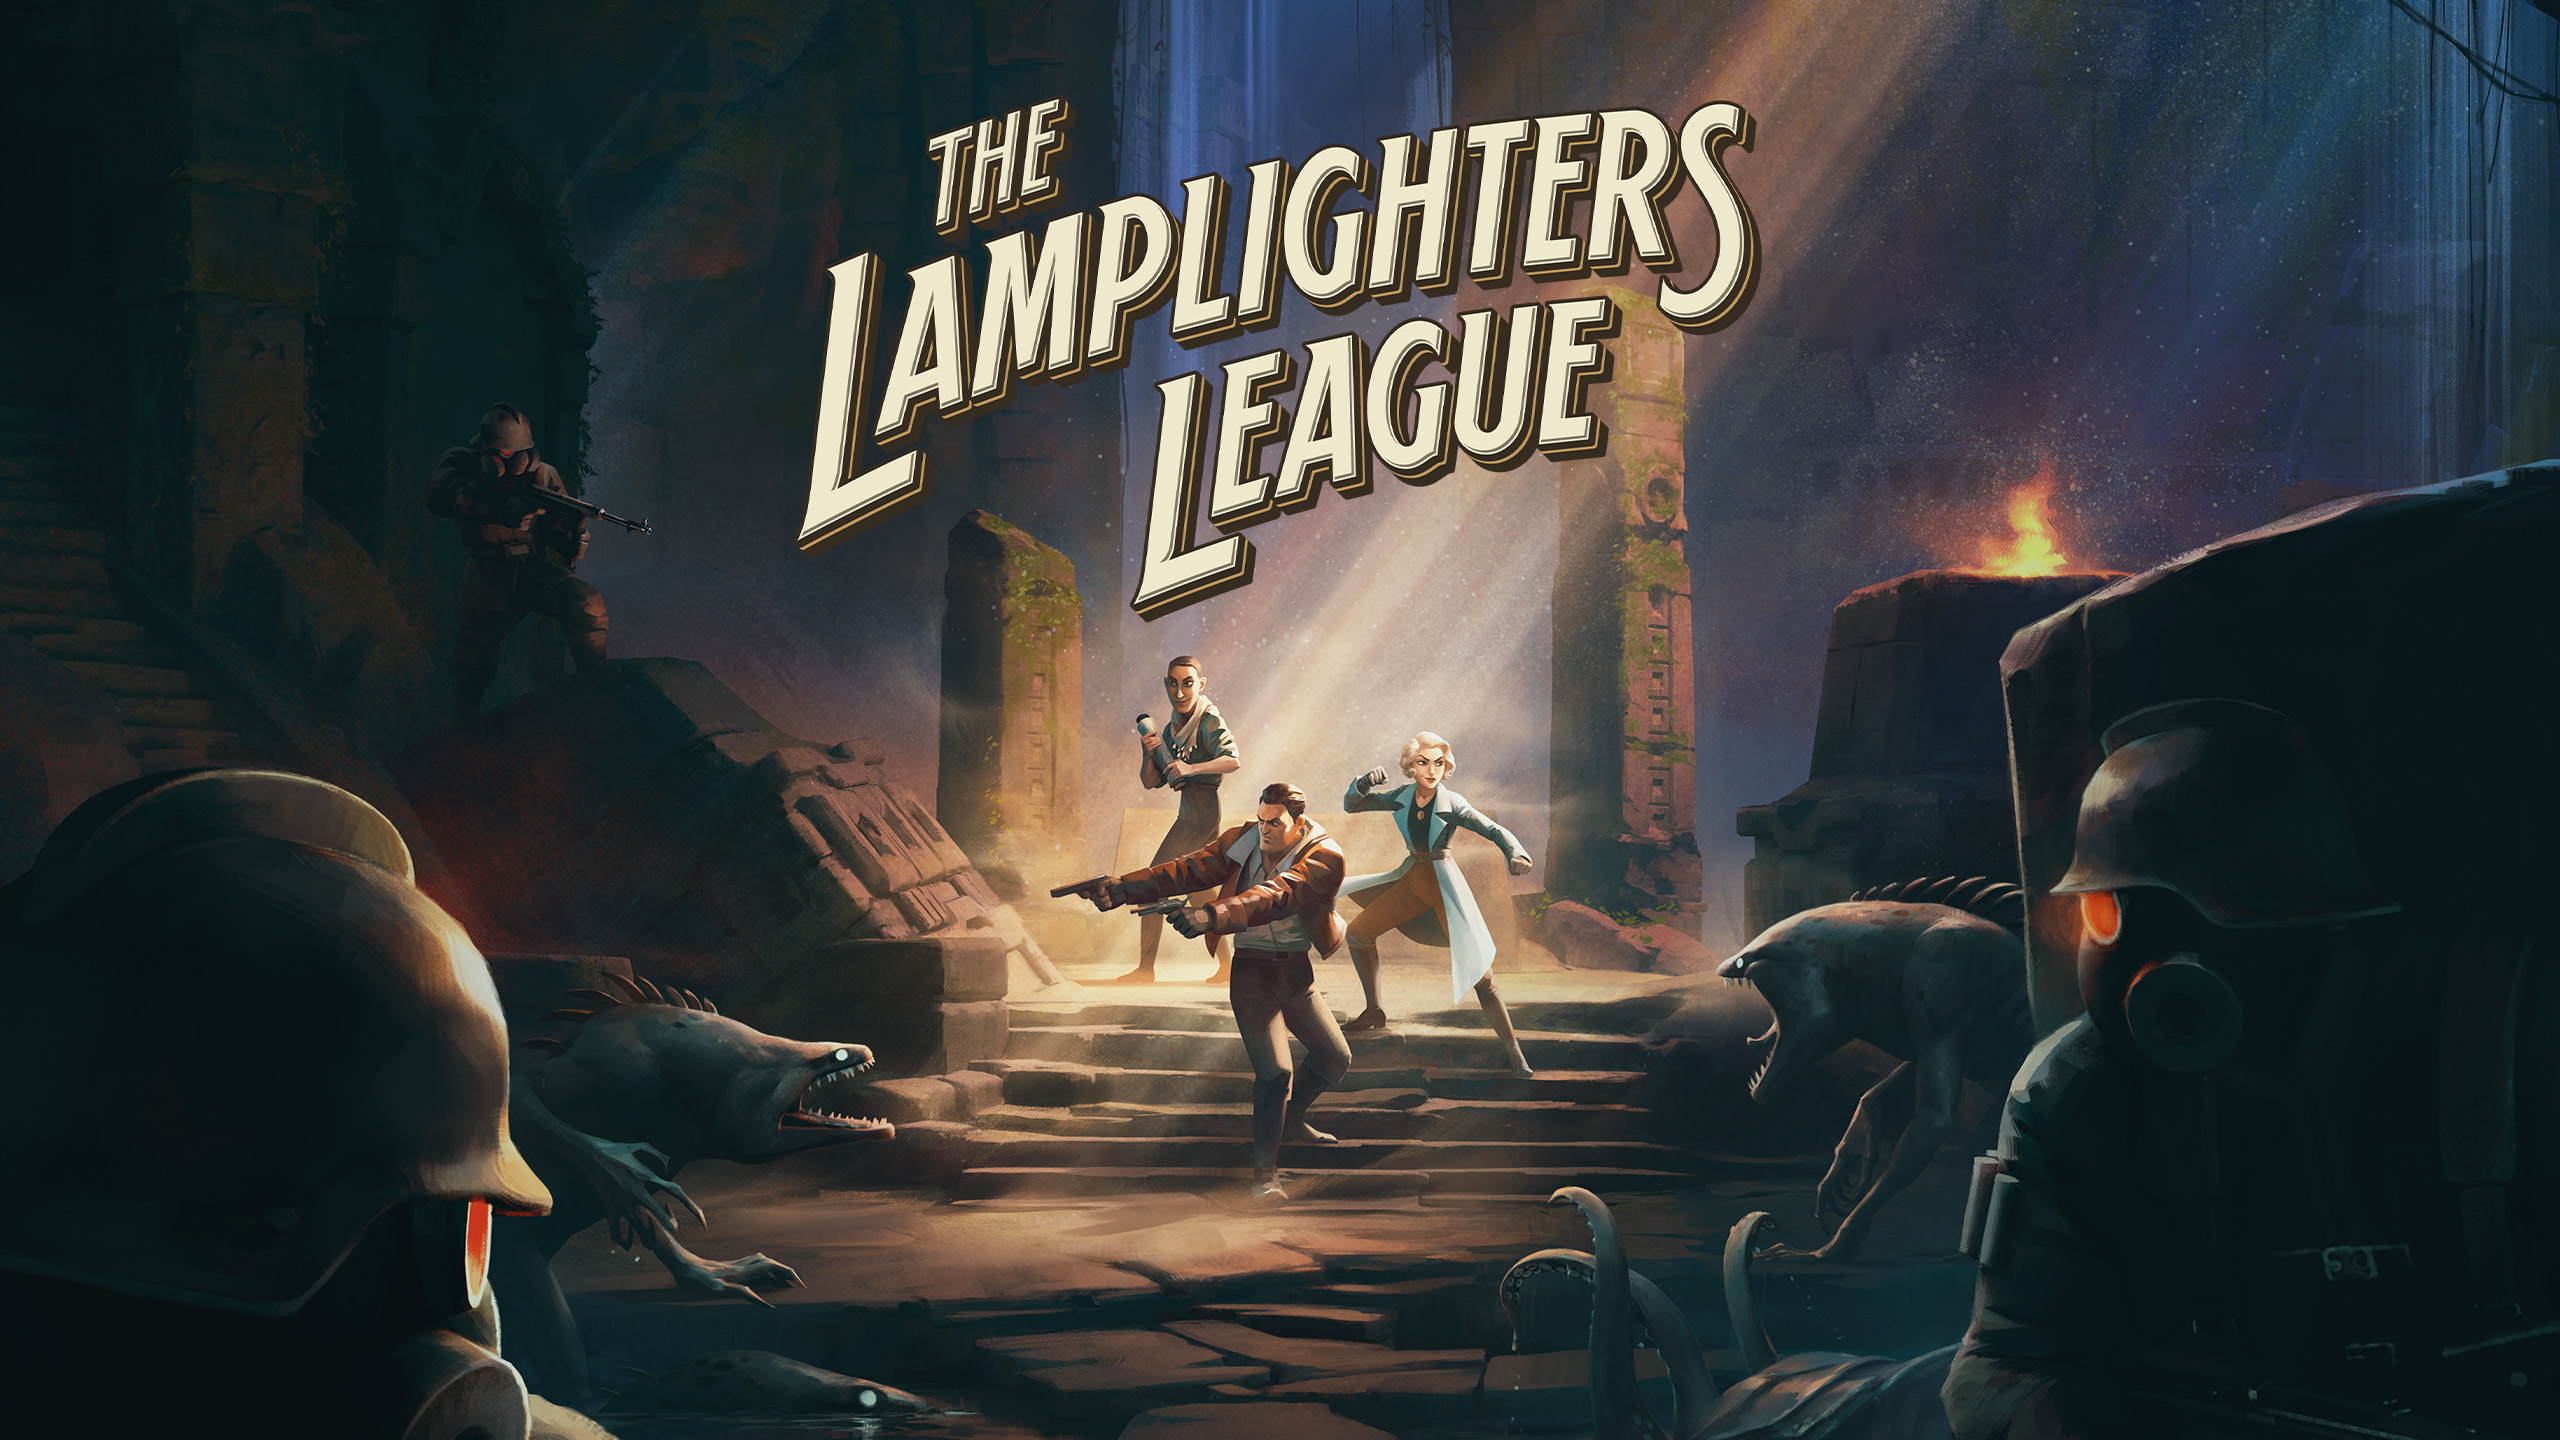 بازی The Lamplighters League یک ناامیدی بزرگ بوده است